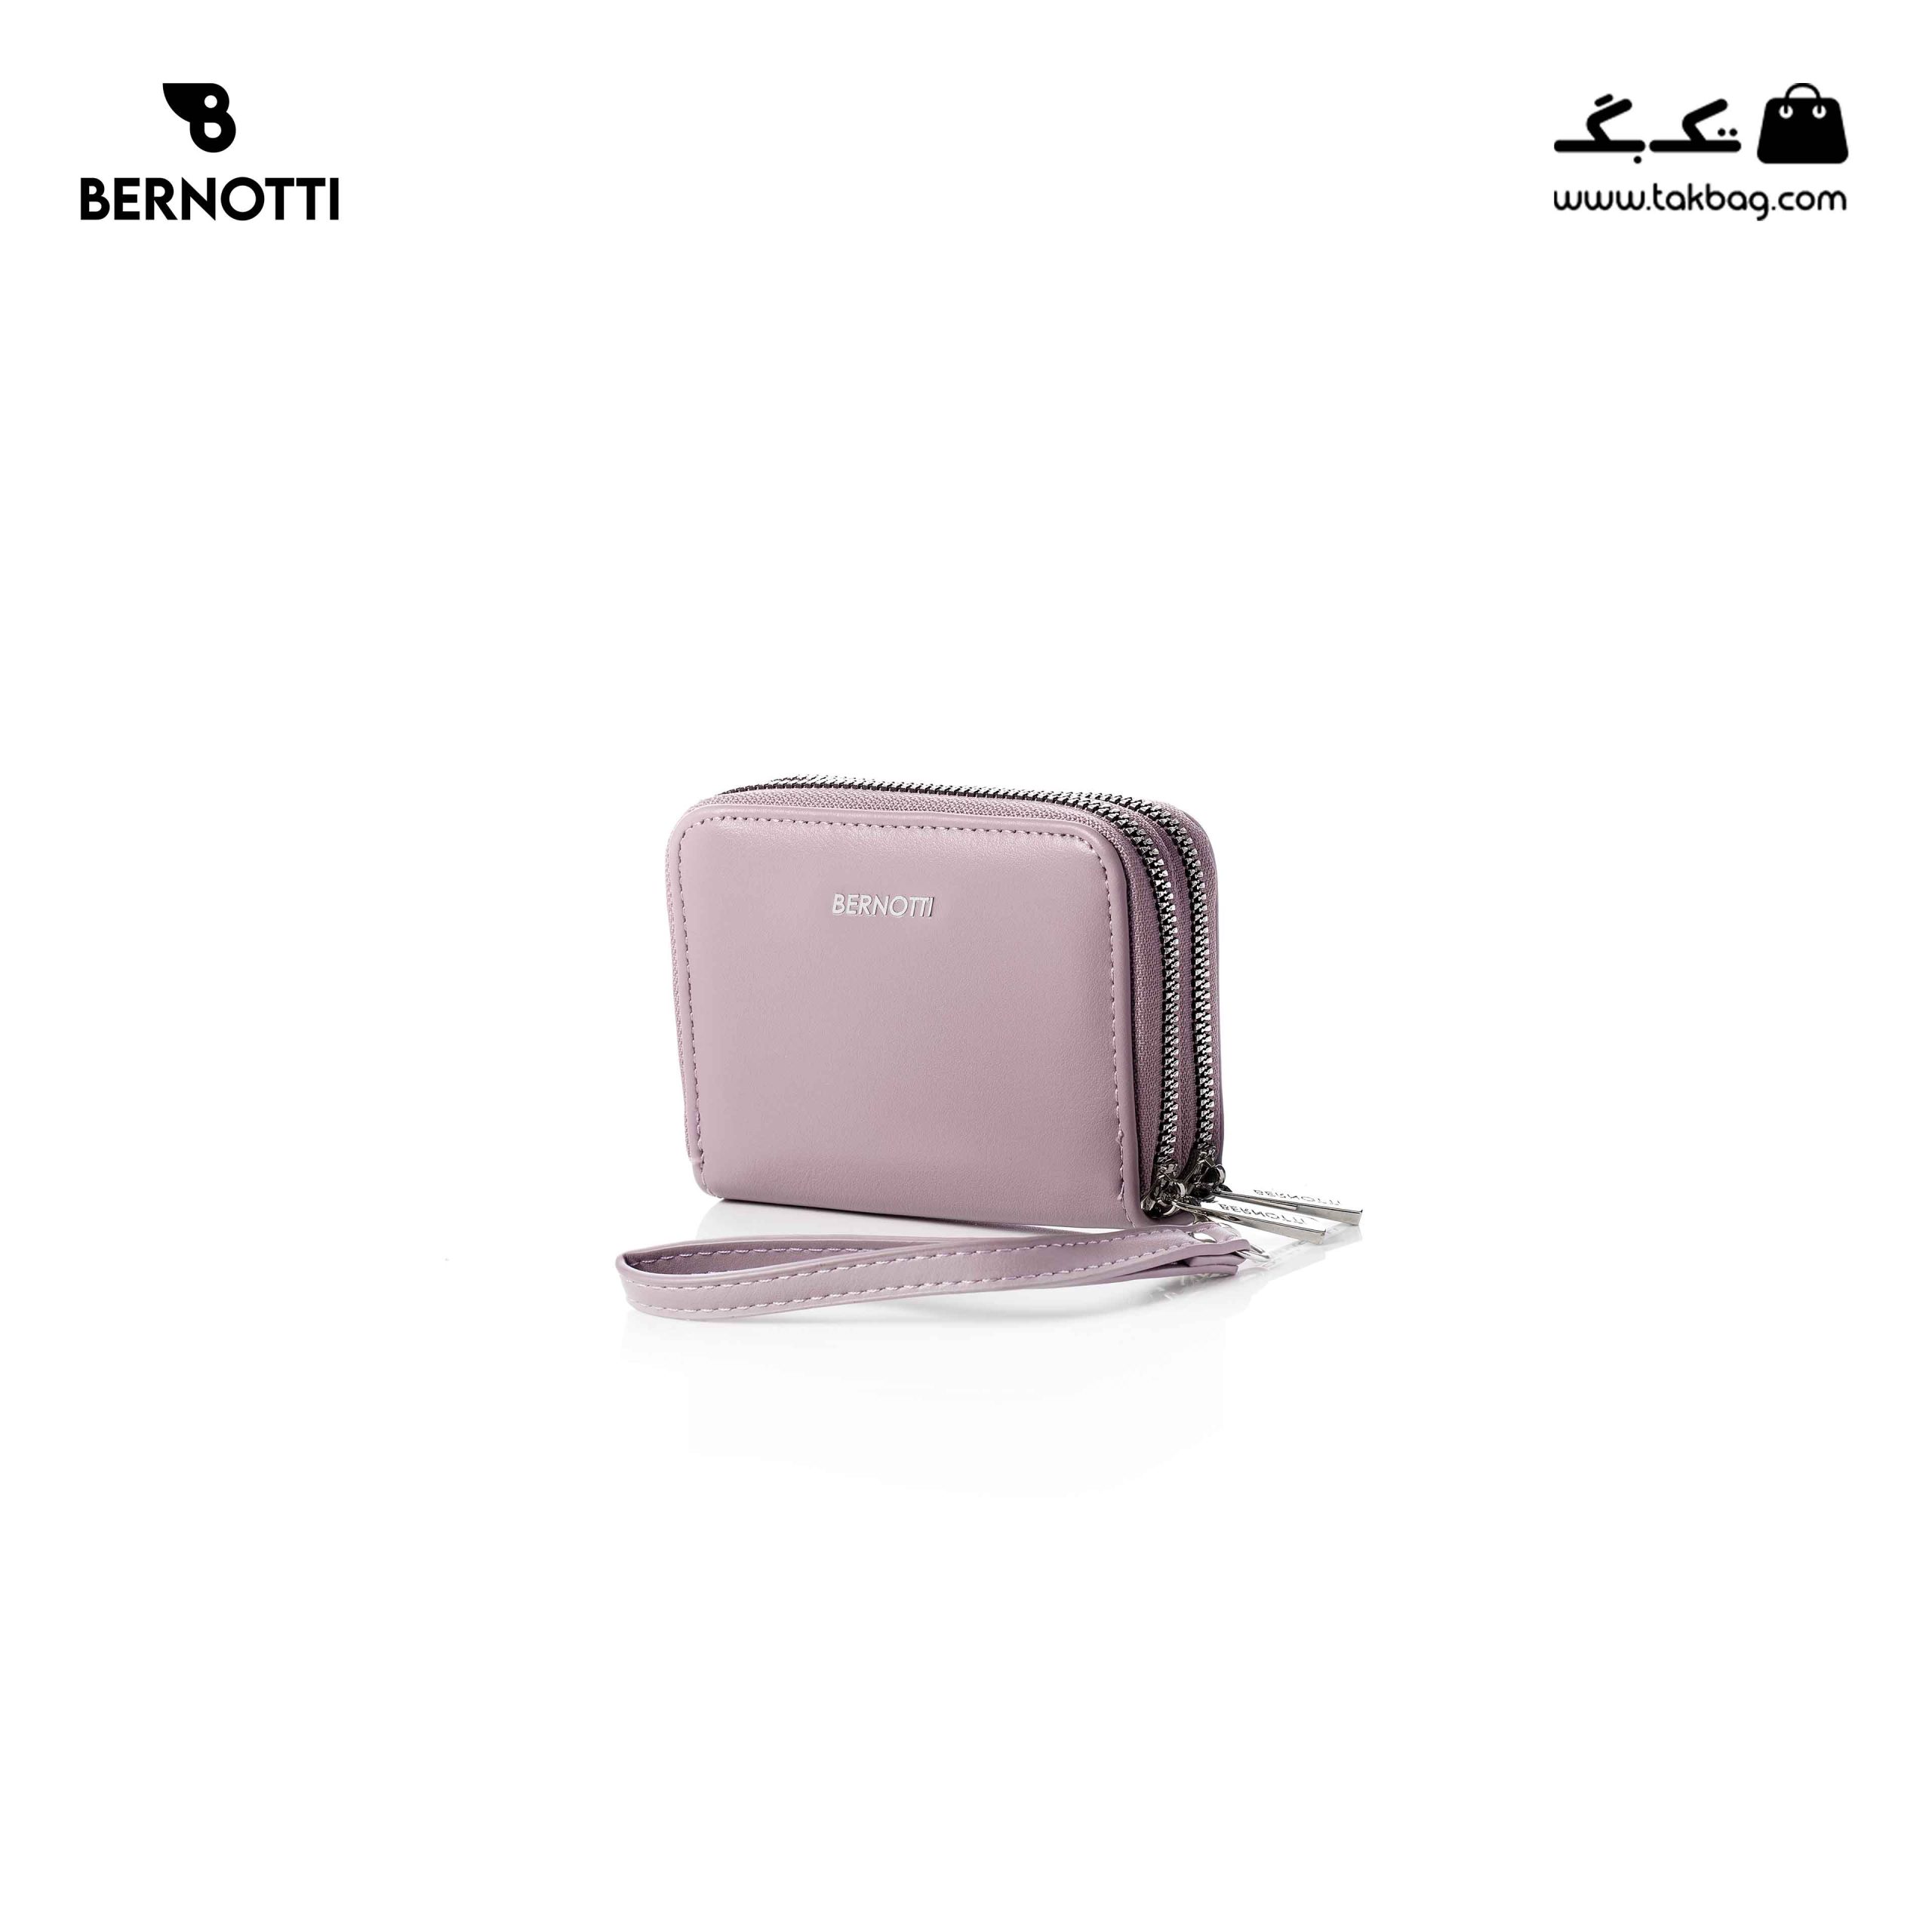 خرید کیف پول زنانه برند برنوتی مدل Bernotti TB-001 | فروشگاه اینترنتی تک بگ